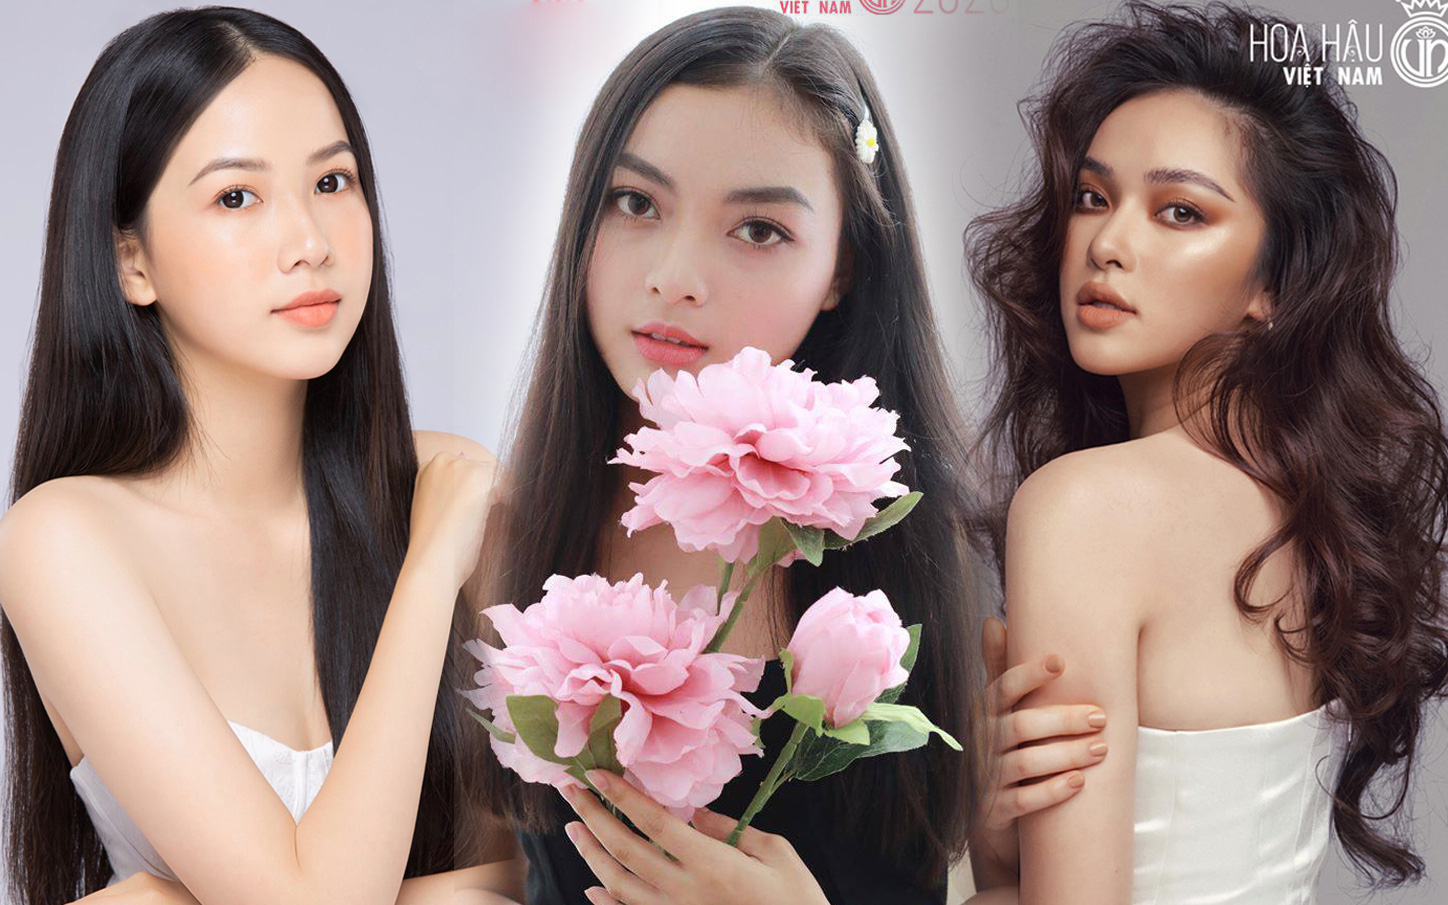 Hoa hậu Việt Nam 2020 lộ diện 3 ứng cử viên đầu tiên: Toàn hotgirl nổi tiếng MXH, thí sinh hao hao Châu Bùi gây chú ý